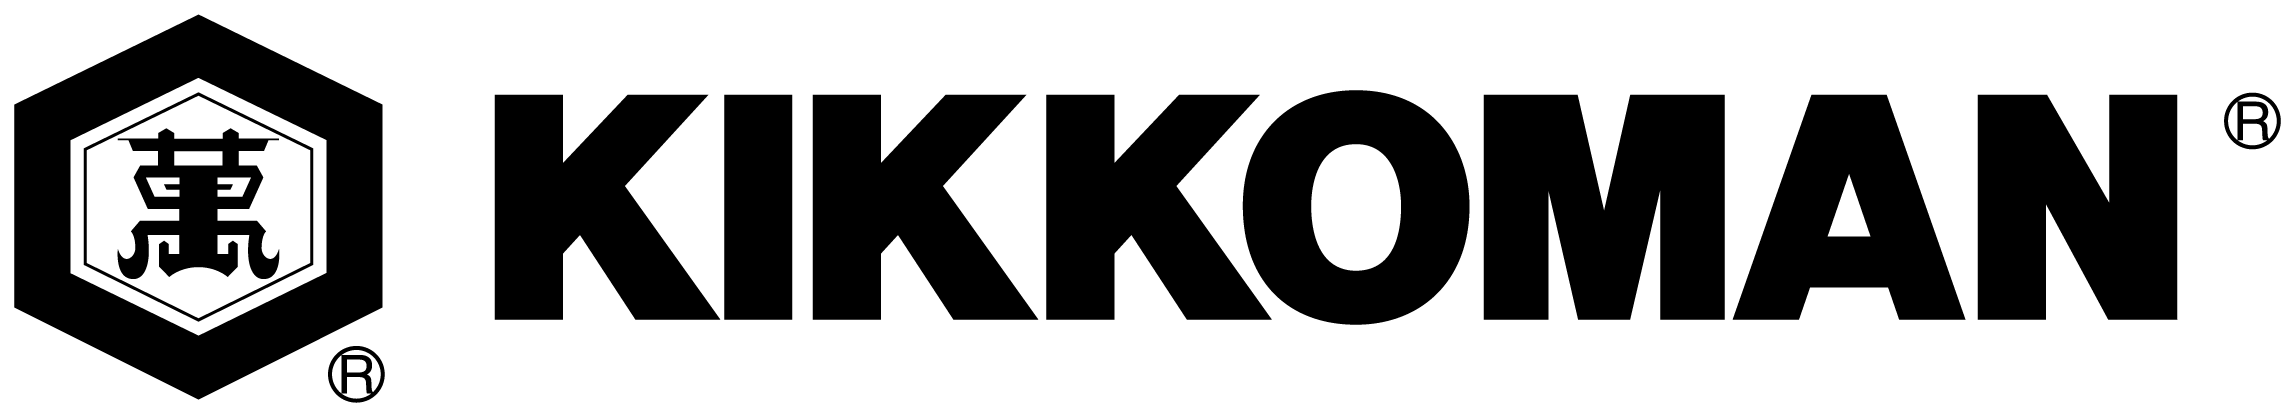 Kikkoman-side-by-side-logo_stroked_Oct2016 (1).png